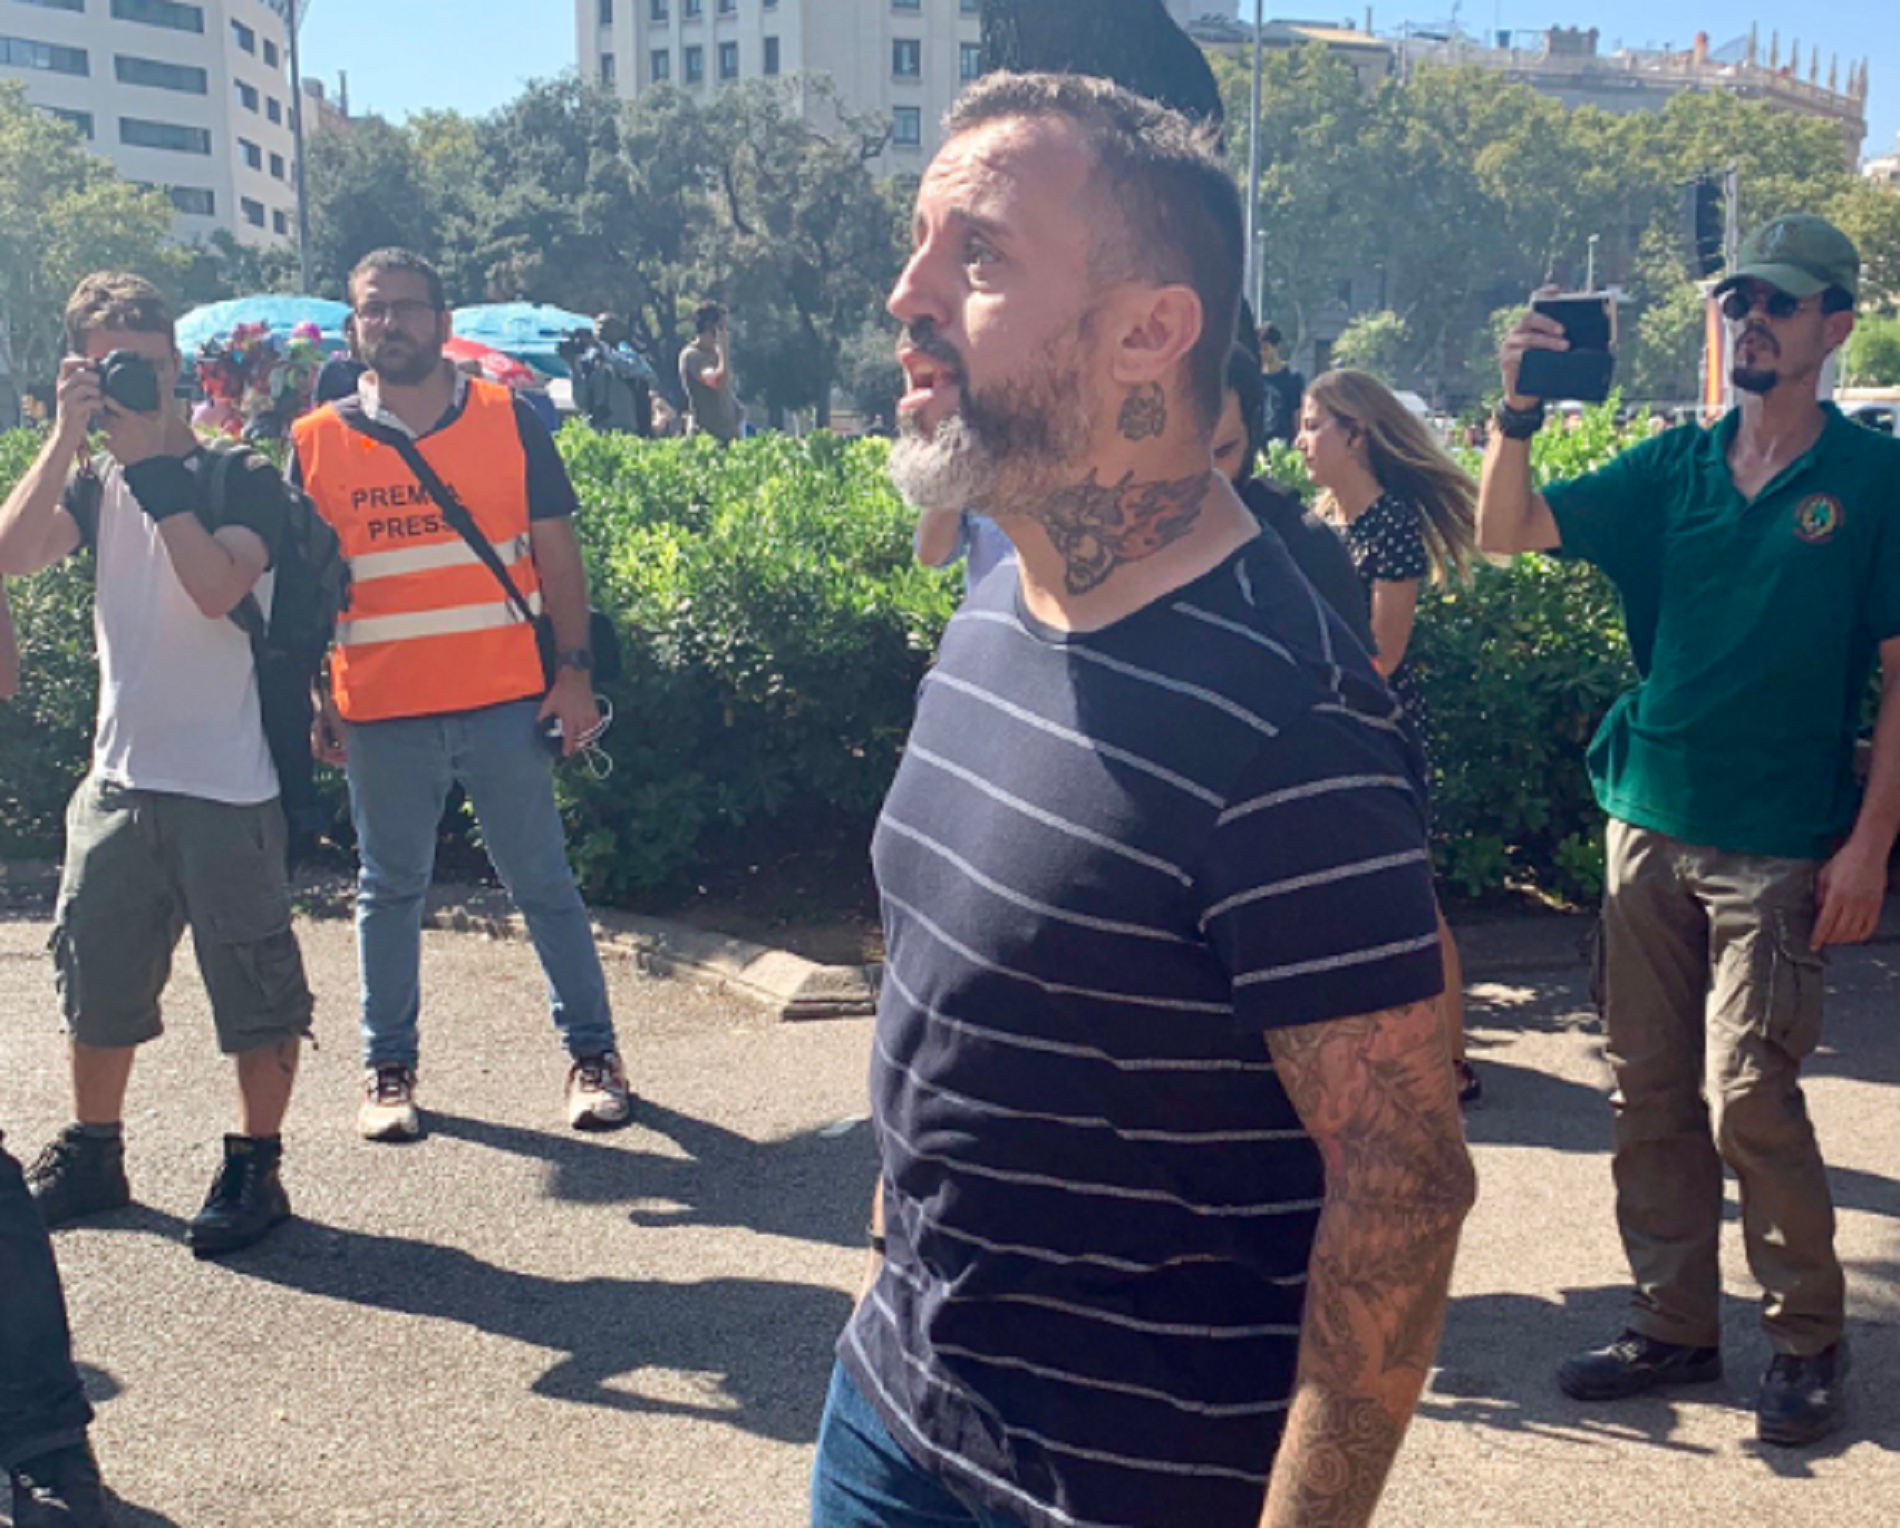 El tatuaje nazi de uno de los asistentes a la manifestación policial